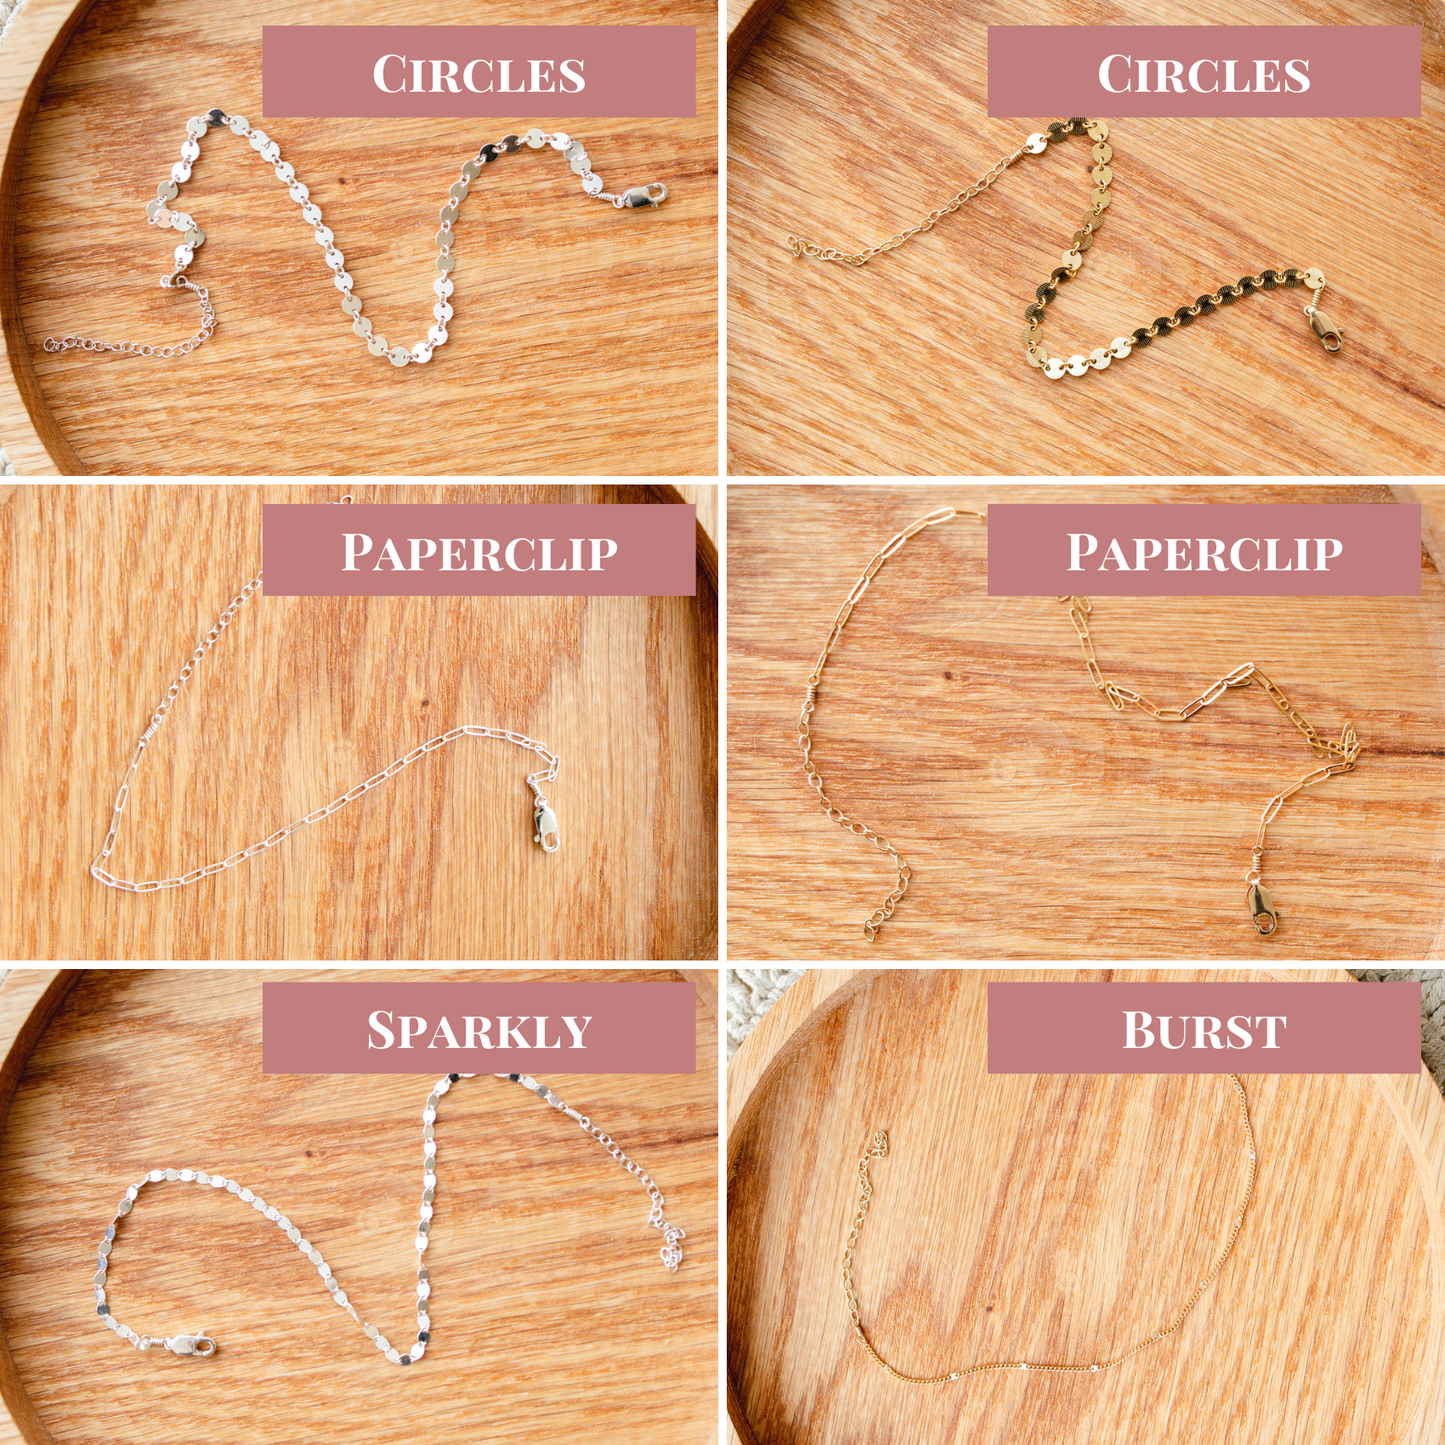 Chain Bracelets and Ankle Bracelets